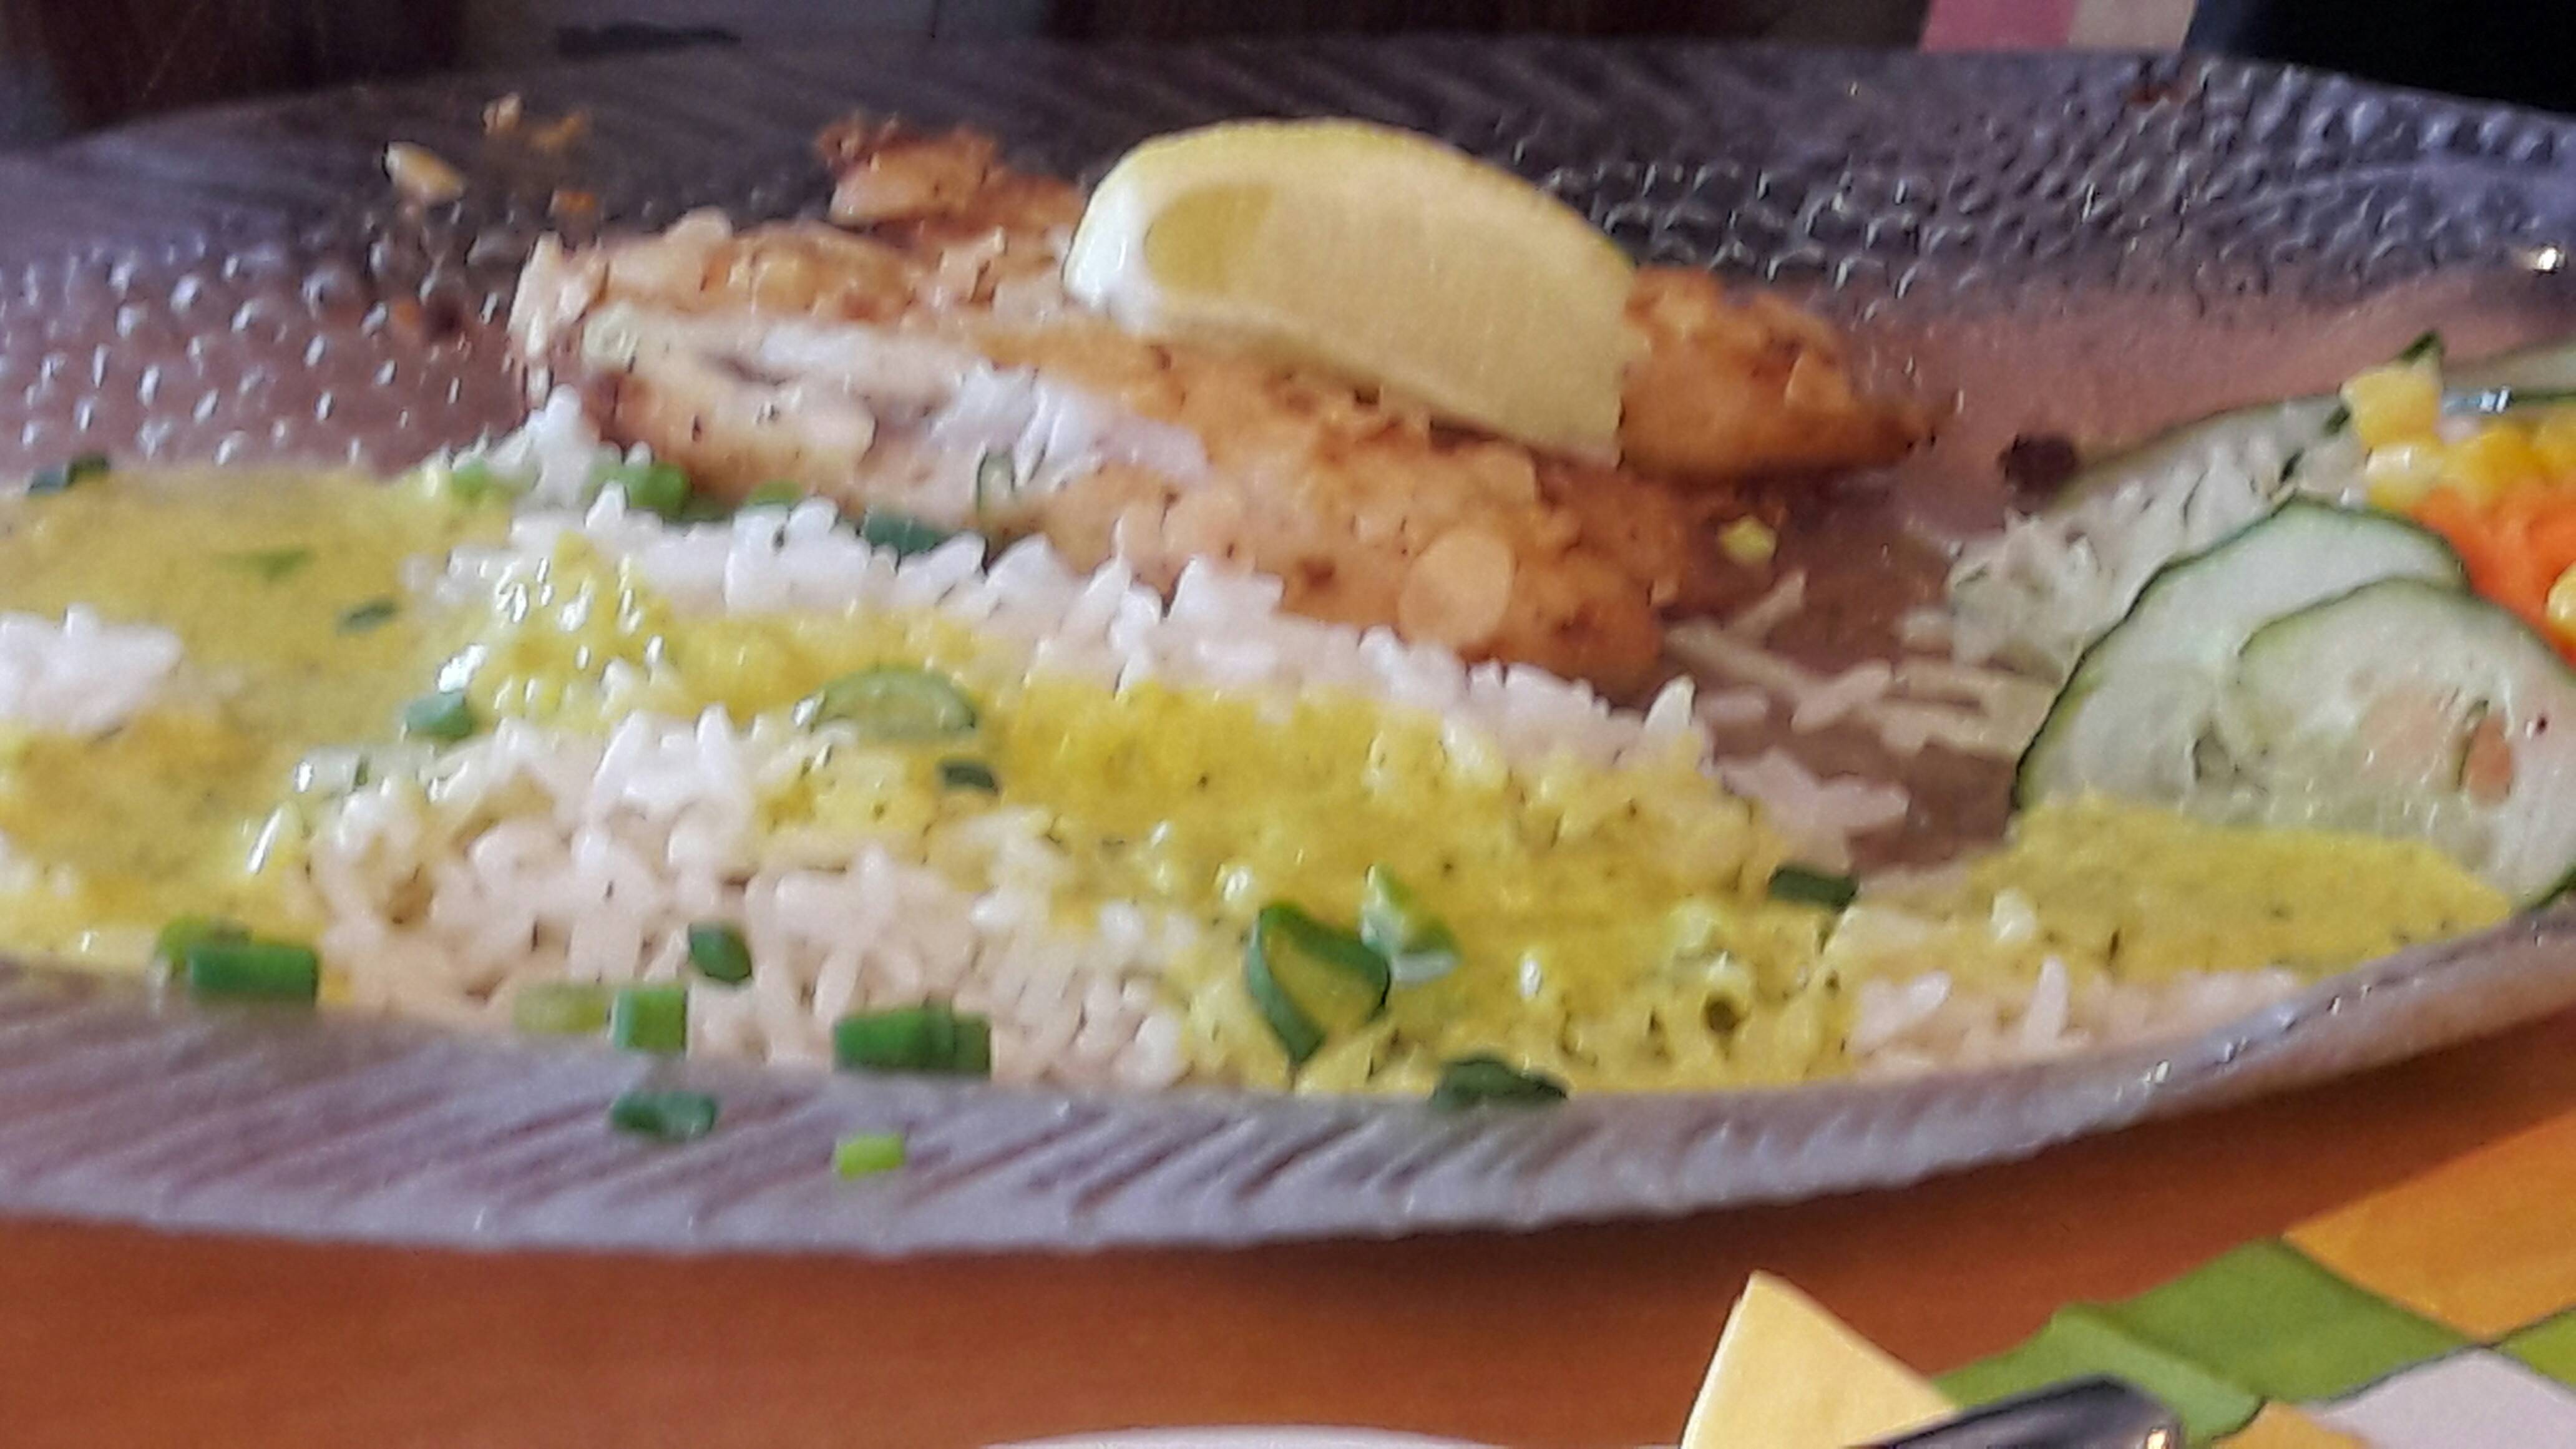 Zanderfilet mit Reis und Currysauce 12.95 €